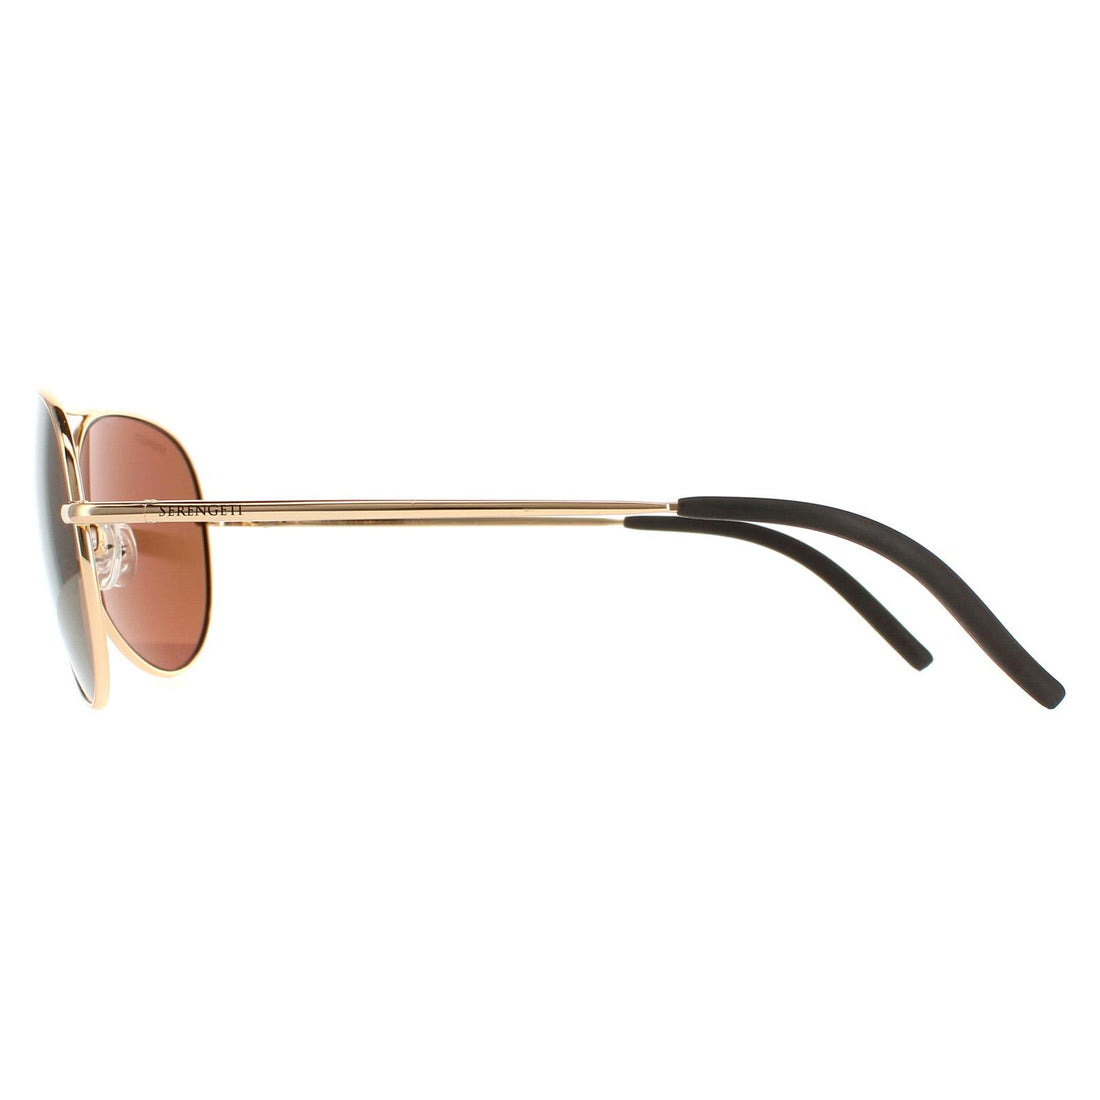 Serengeti Sunglasses Carrara Small 8551 Shiny Bold Gold Polarized